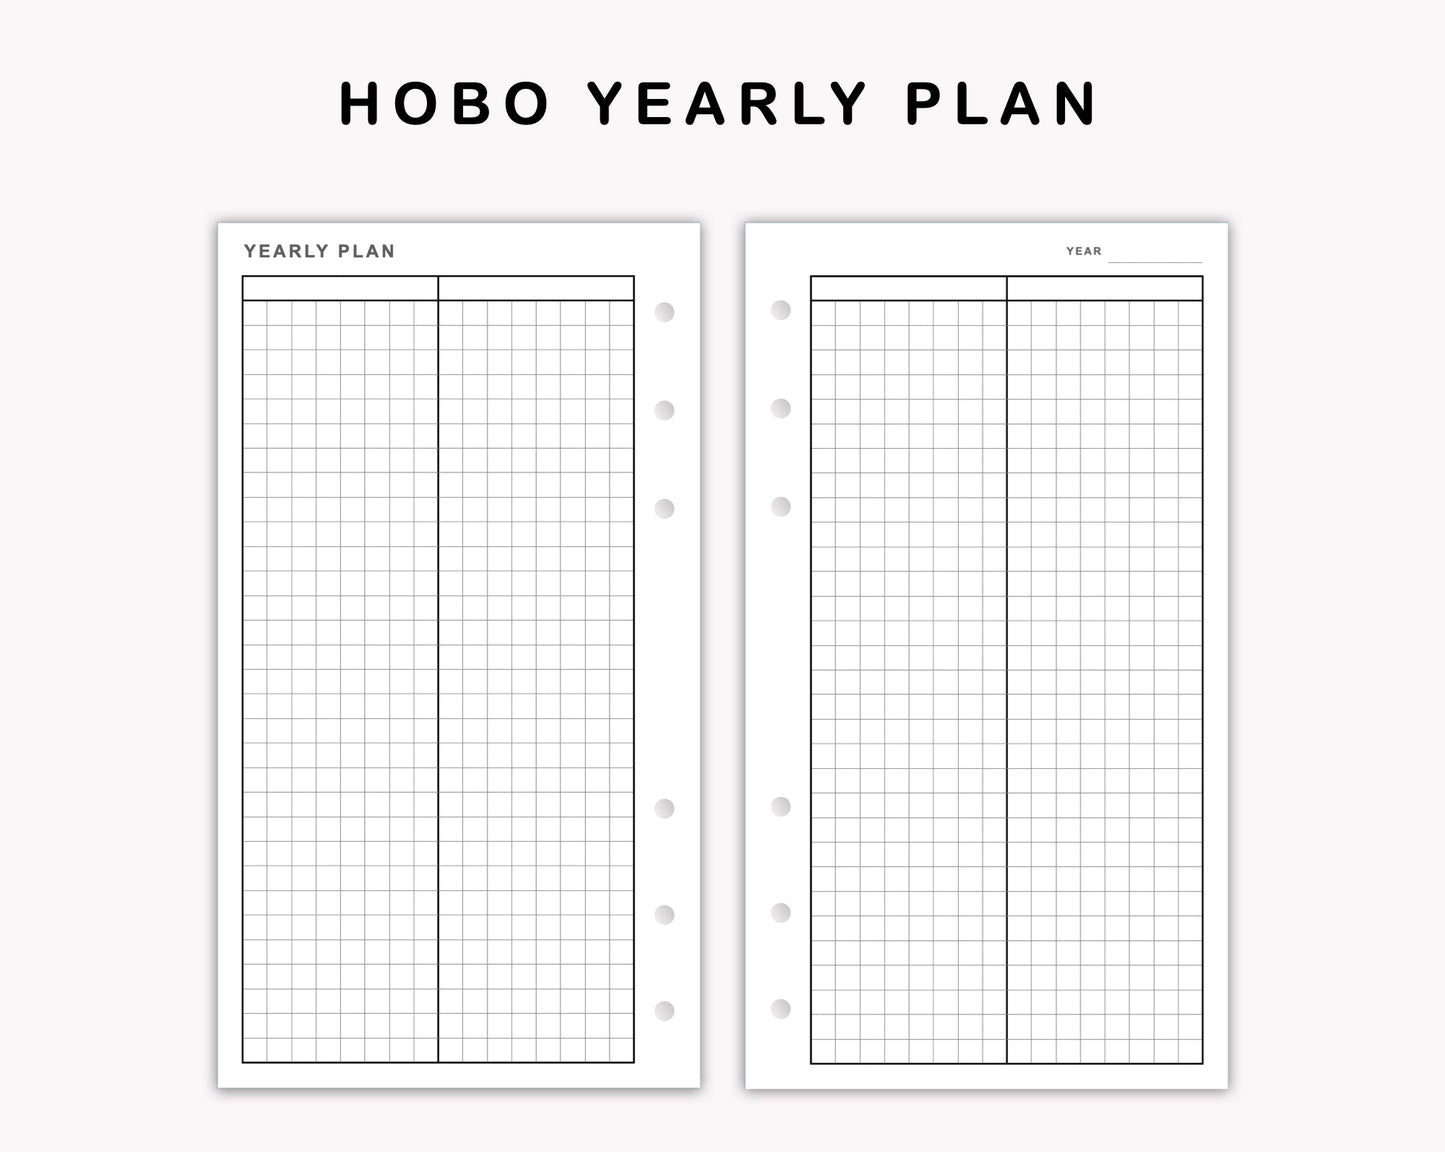 Personal Inserts - Yearly Plan - Hobonichi